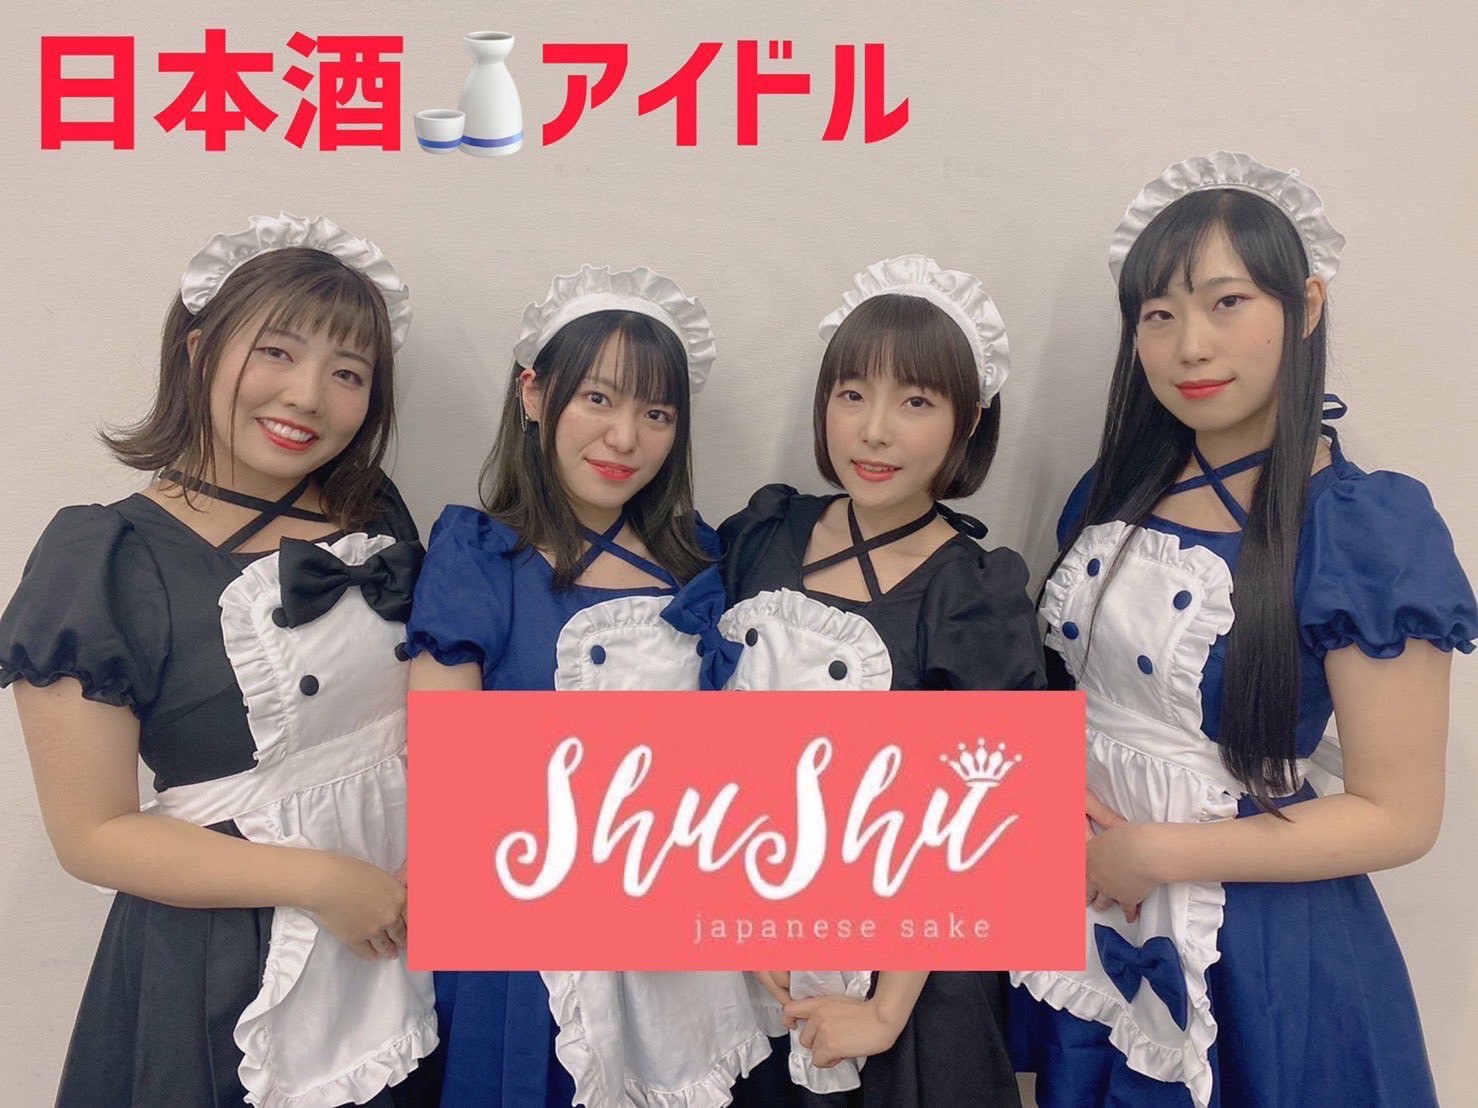 日本酒アイドル shushu 単独ライブ in 秋葉原 のご案内 from BECKアキバ